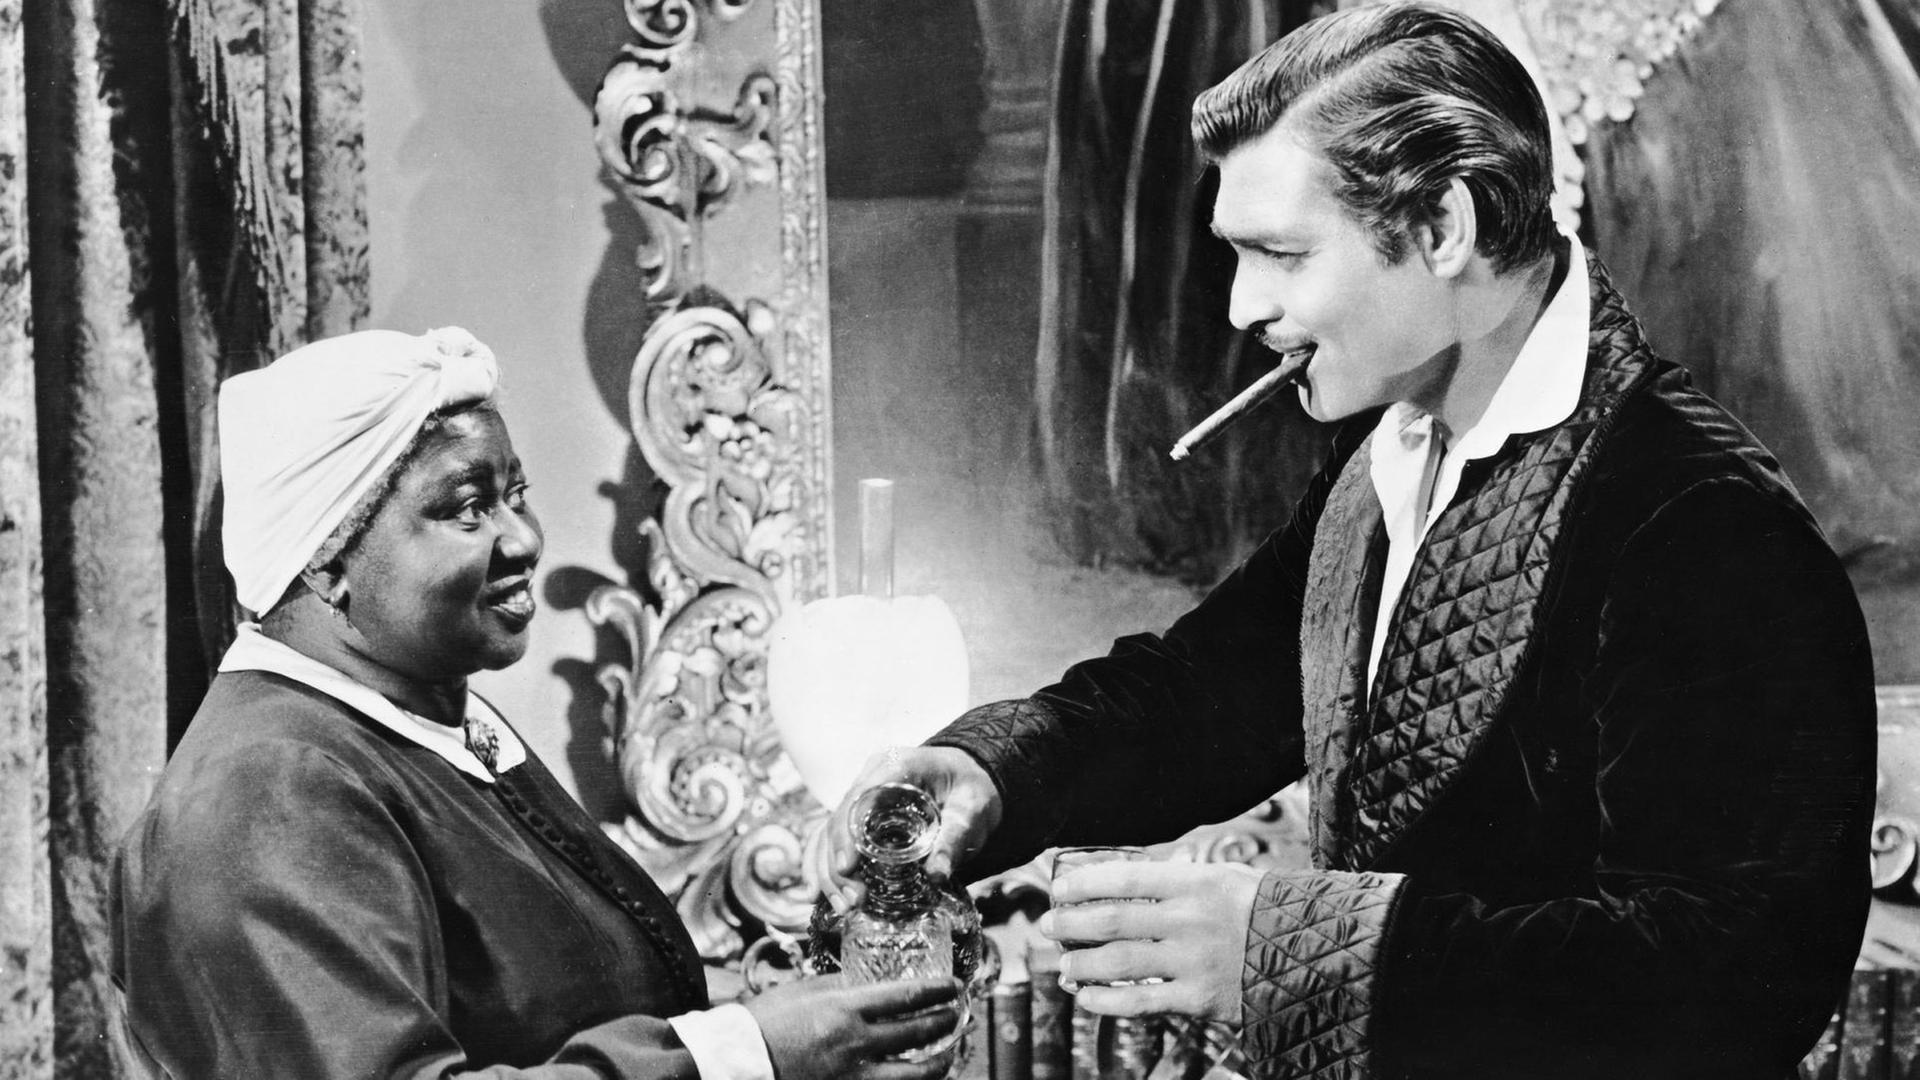 Die Schauspieler Hattie McDaniel und Clark Gable in einer Szene des Films "Vom Winde verweht" von 1939.